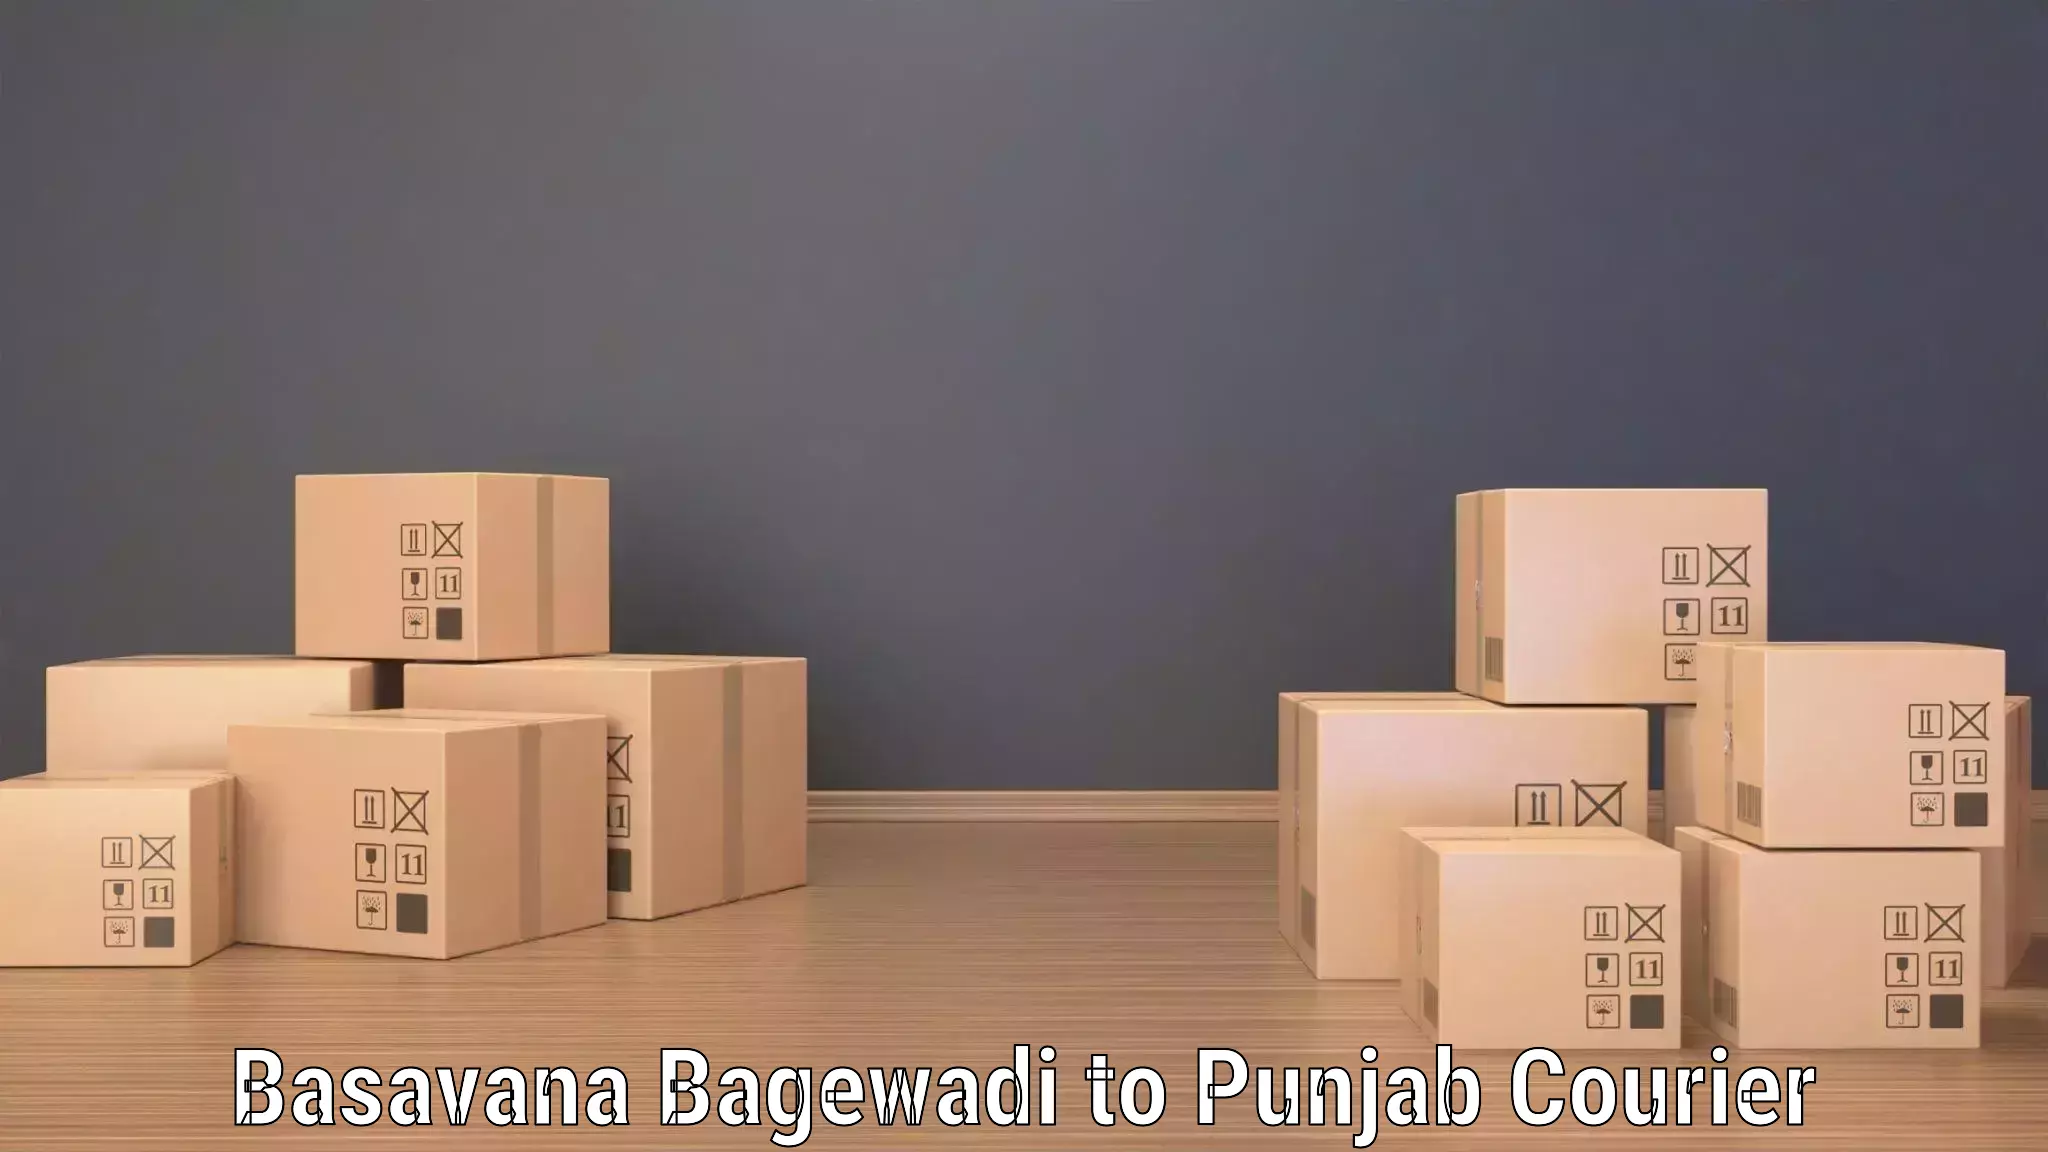 Package forwarding Basavana Bagewadi to Punjab